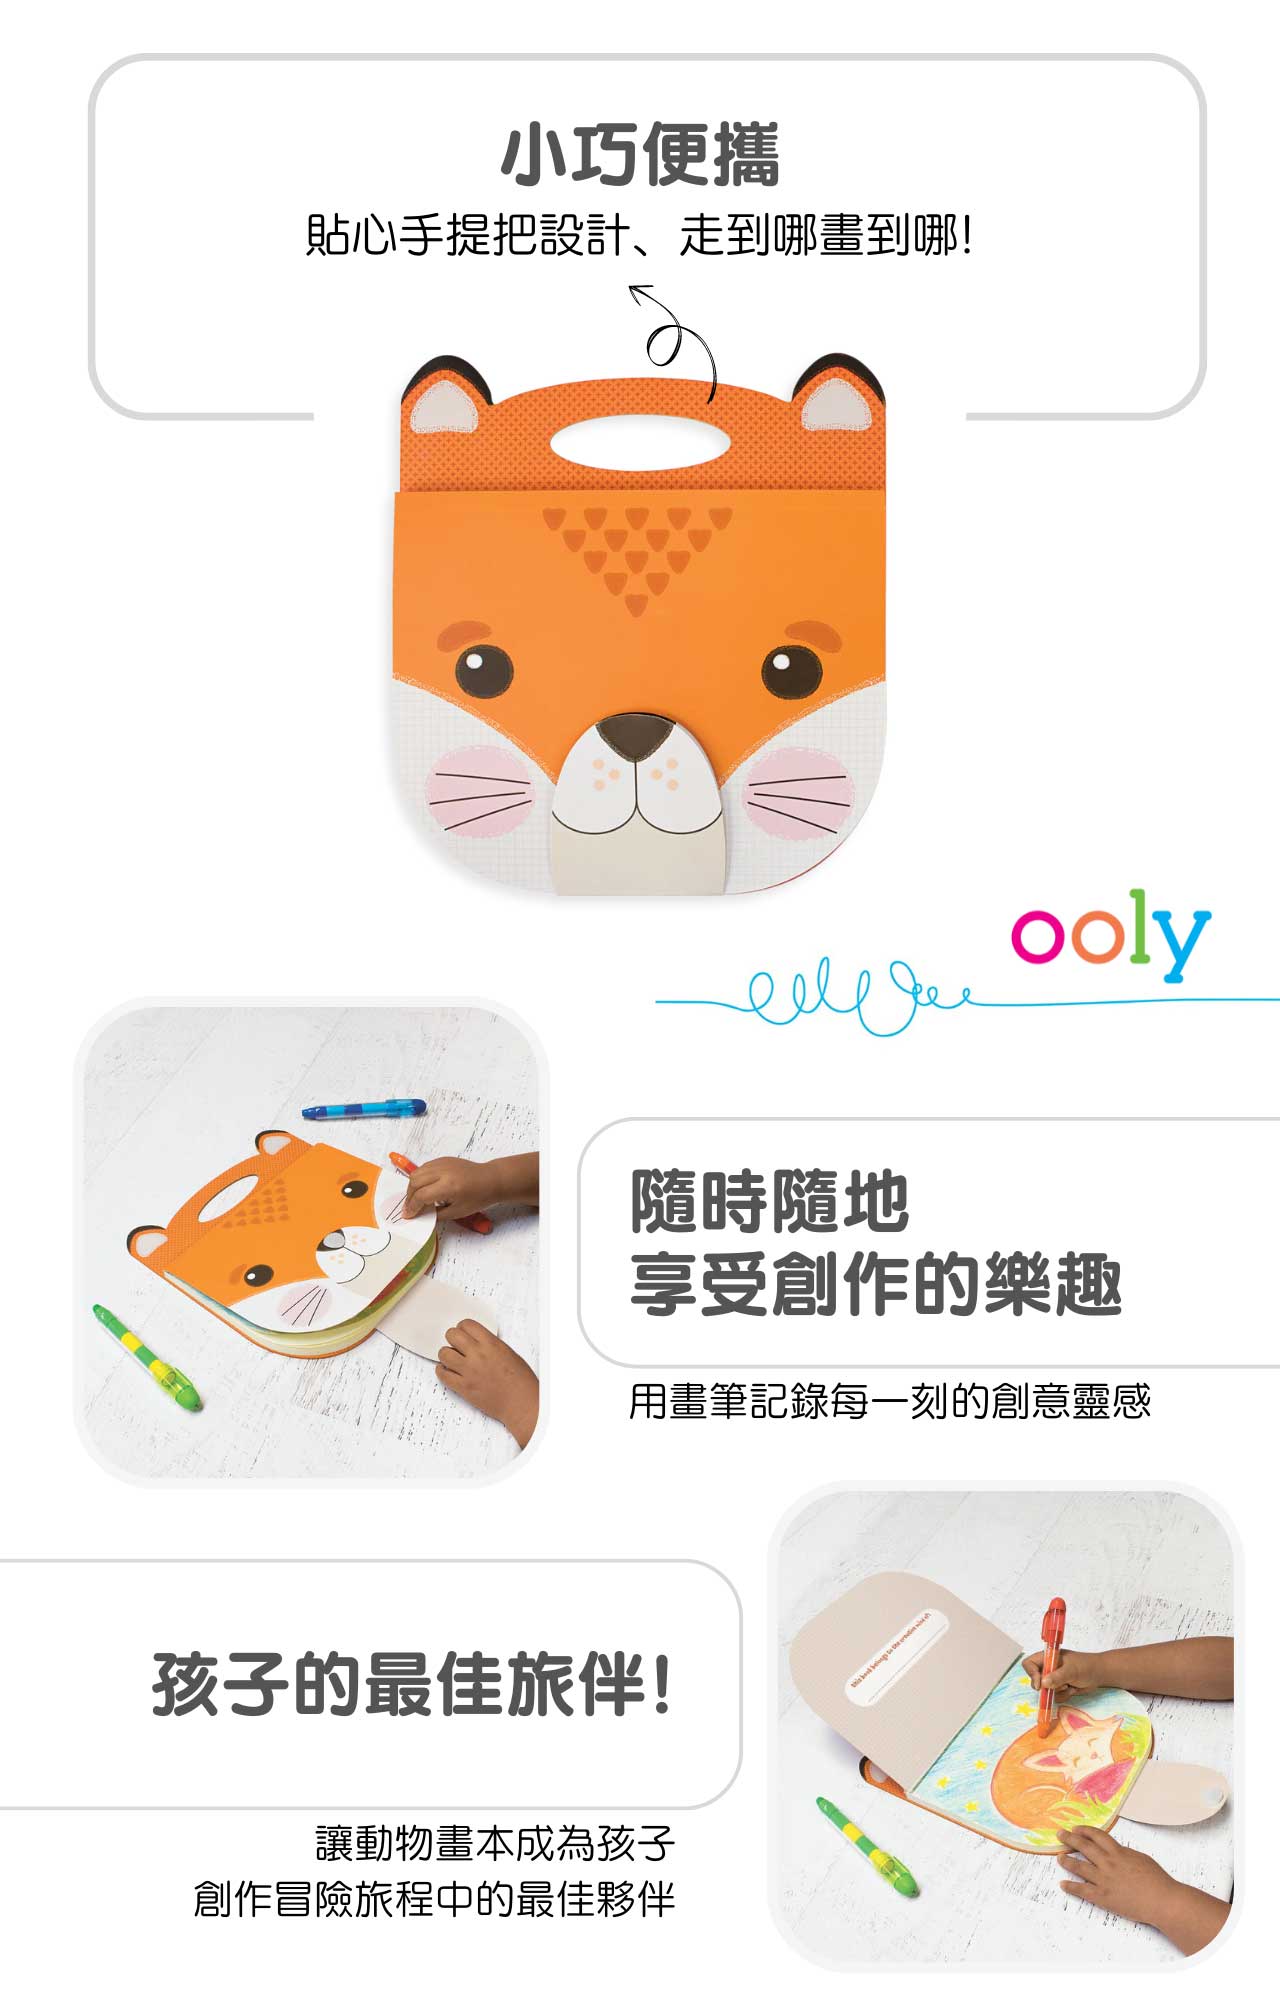 美國ooly可愛動物造型畫本系列_狐狸款_產品介紹2